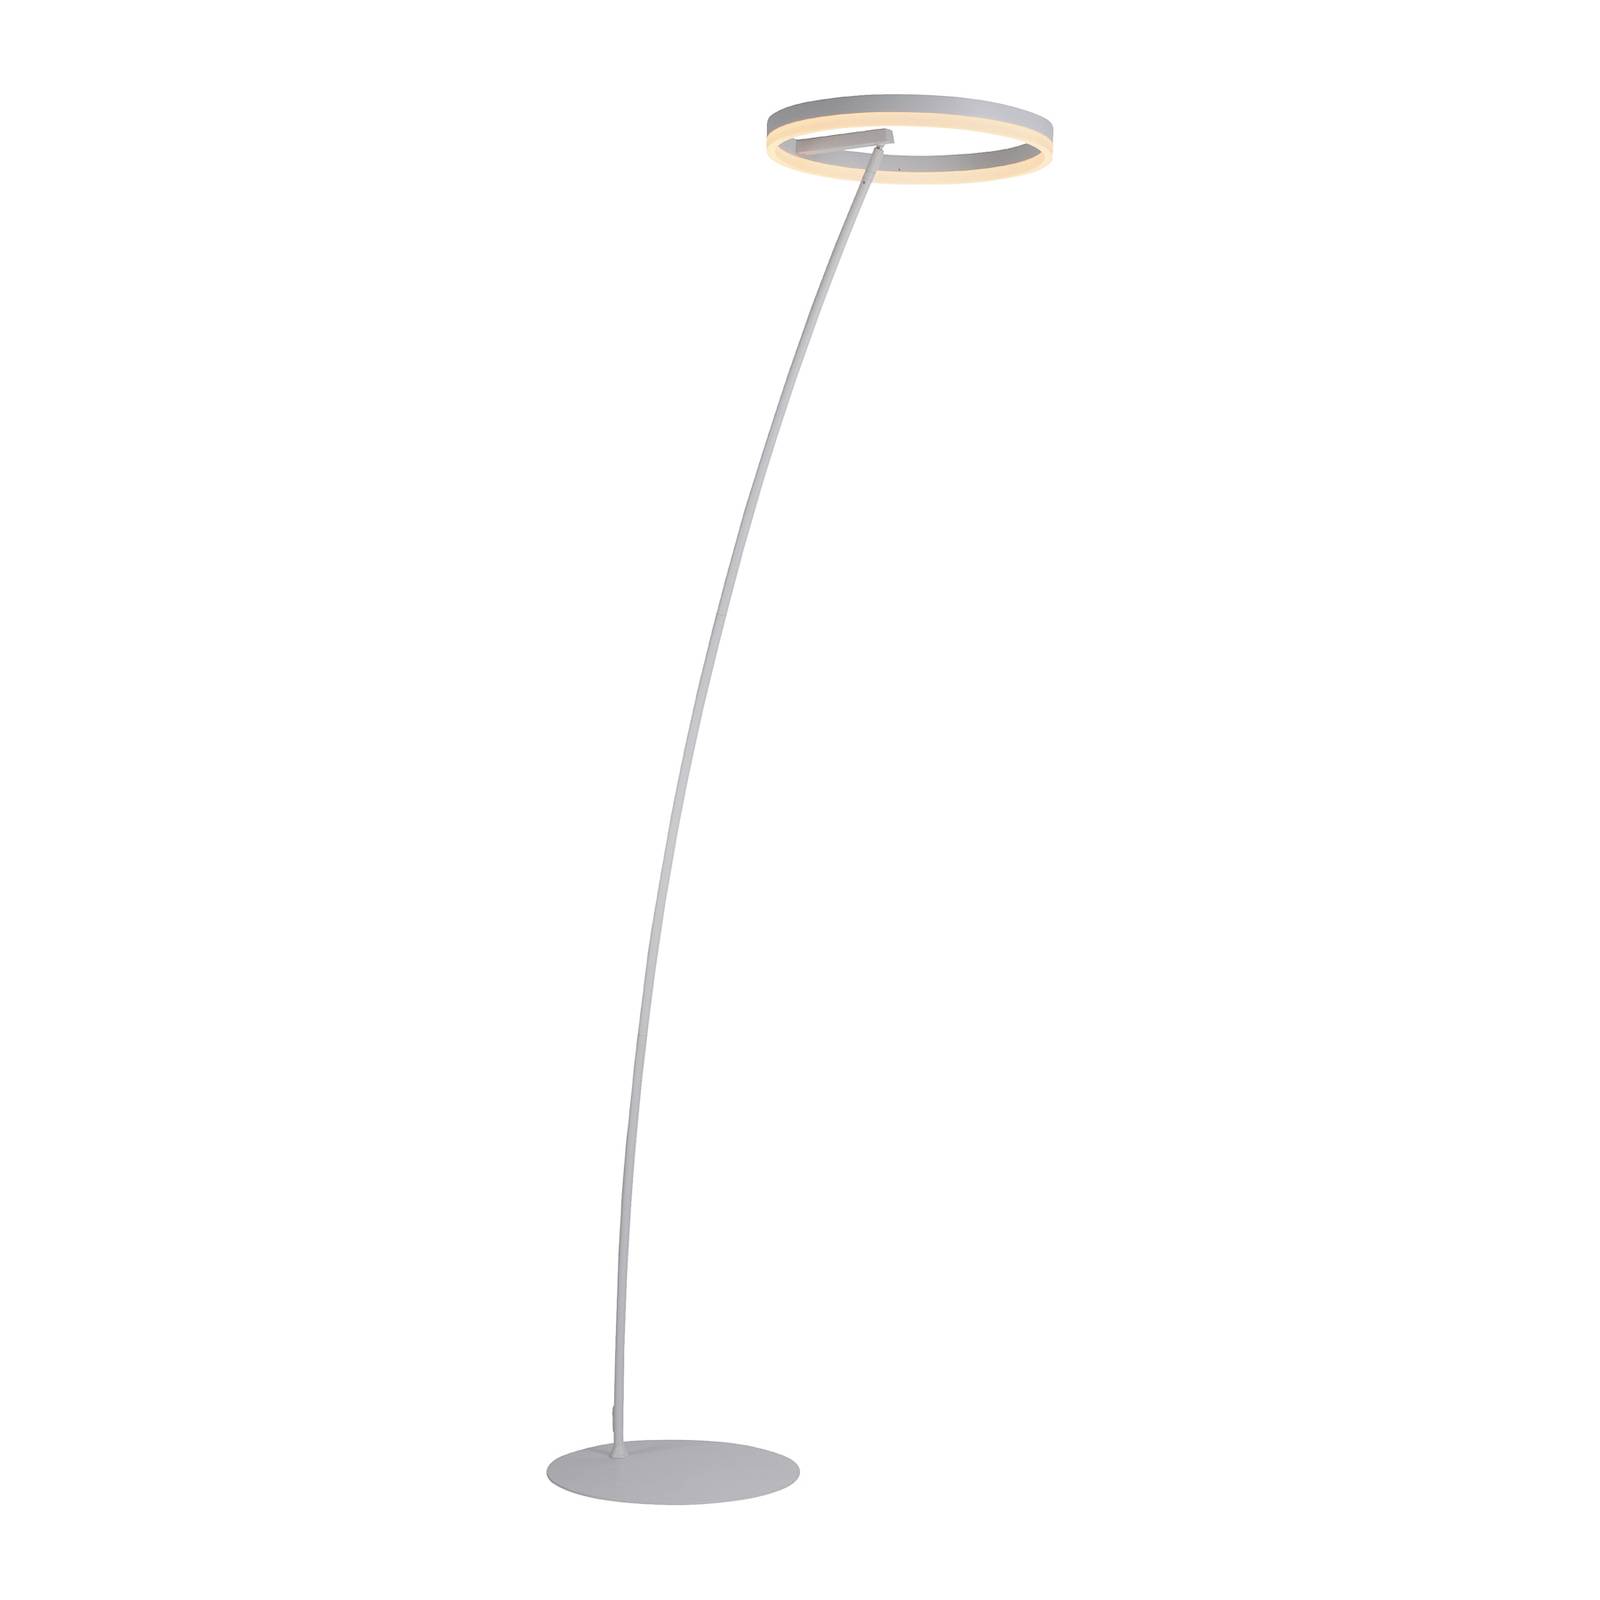 Stehlampen und andere Lampen von PAUL NEUHAUS. Online kaufen bei Möbel &